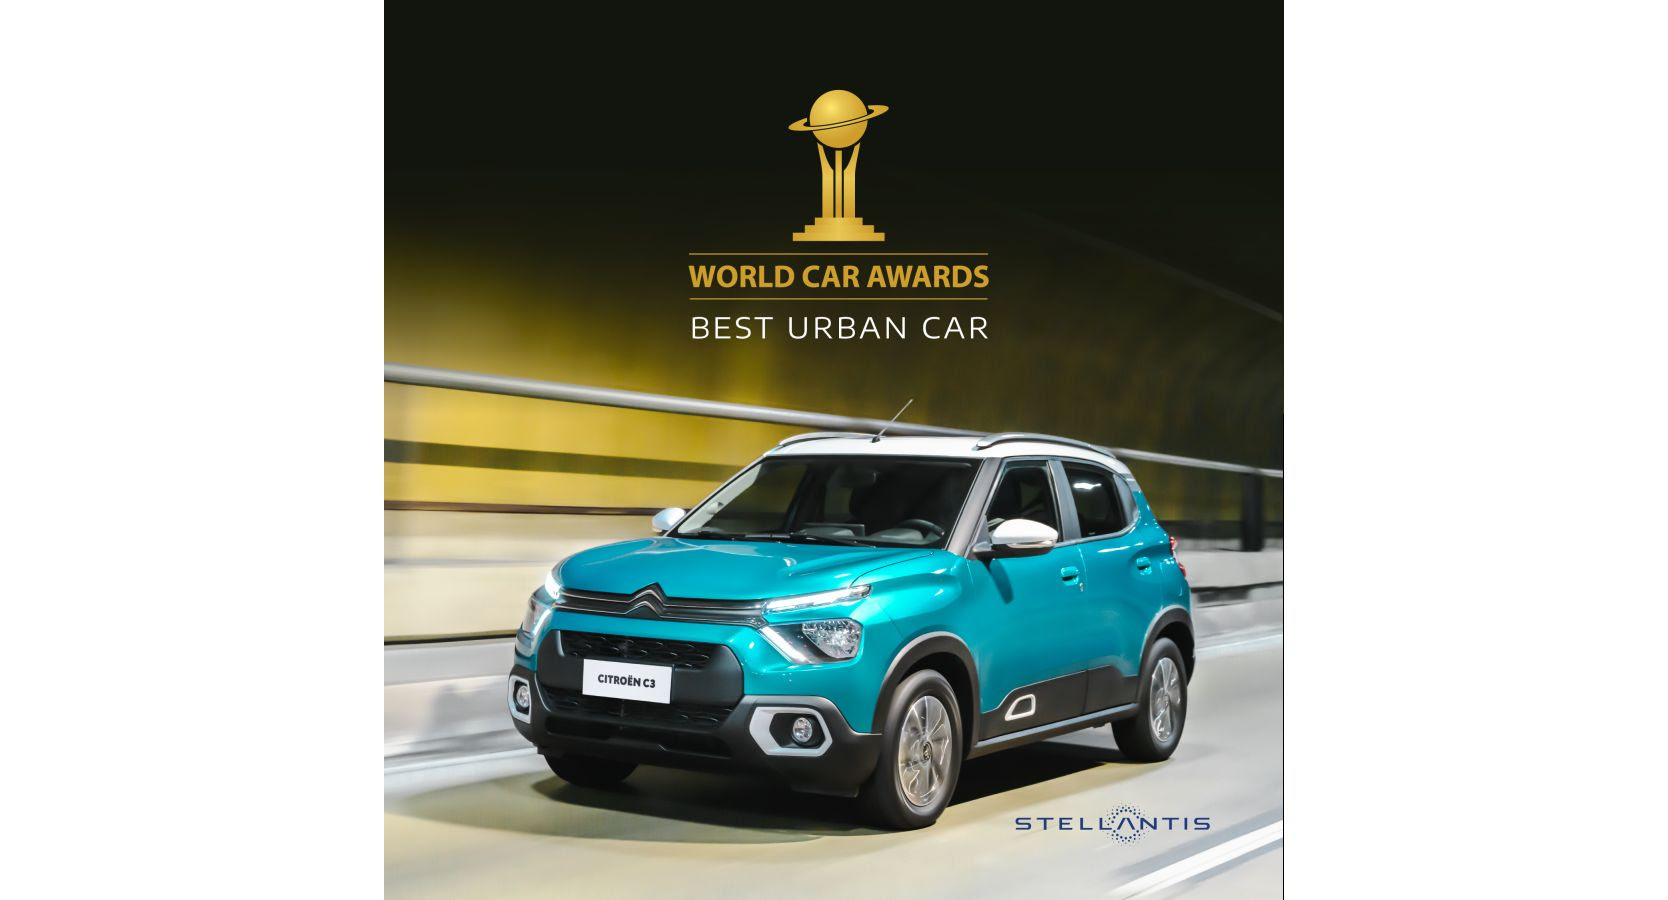 El nuevo Citroën C3 gana el premio al “Best Urban Car” en los World Car Awards 2023